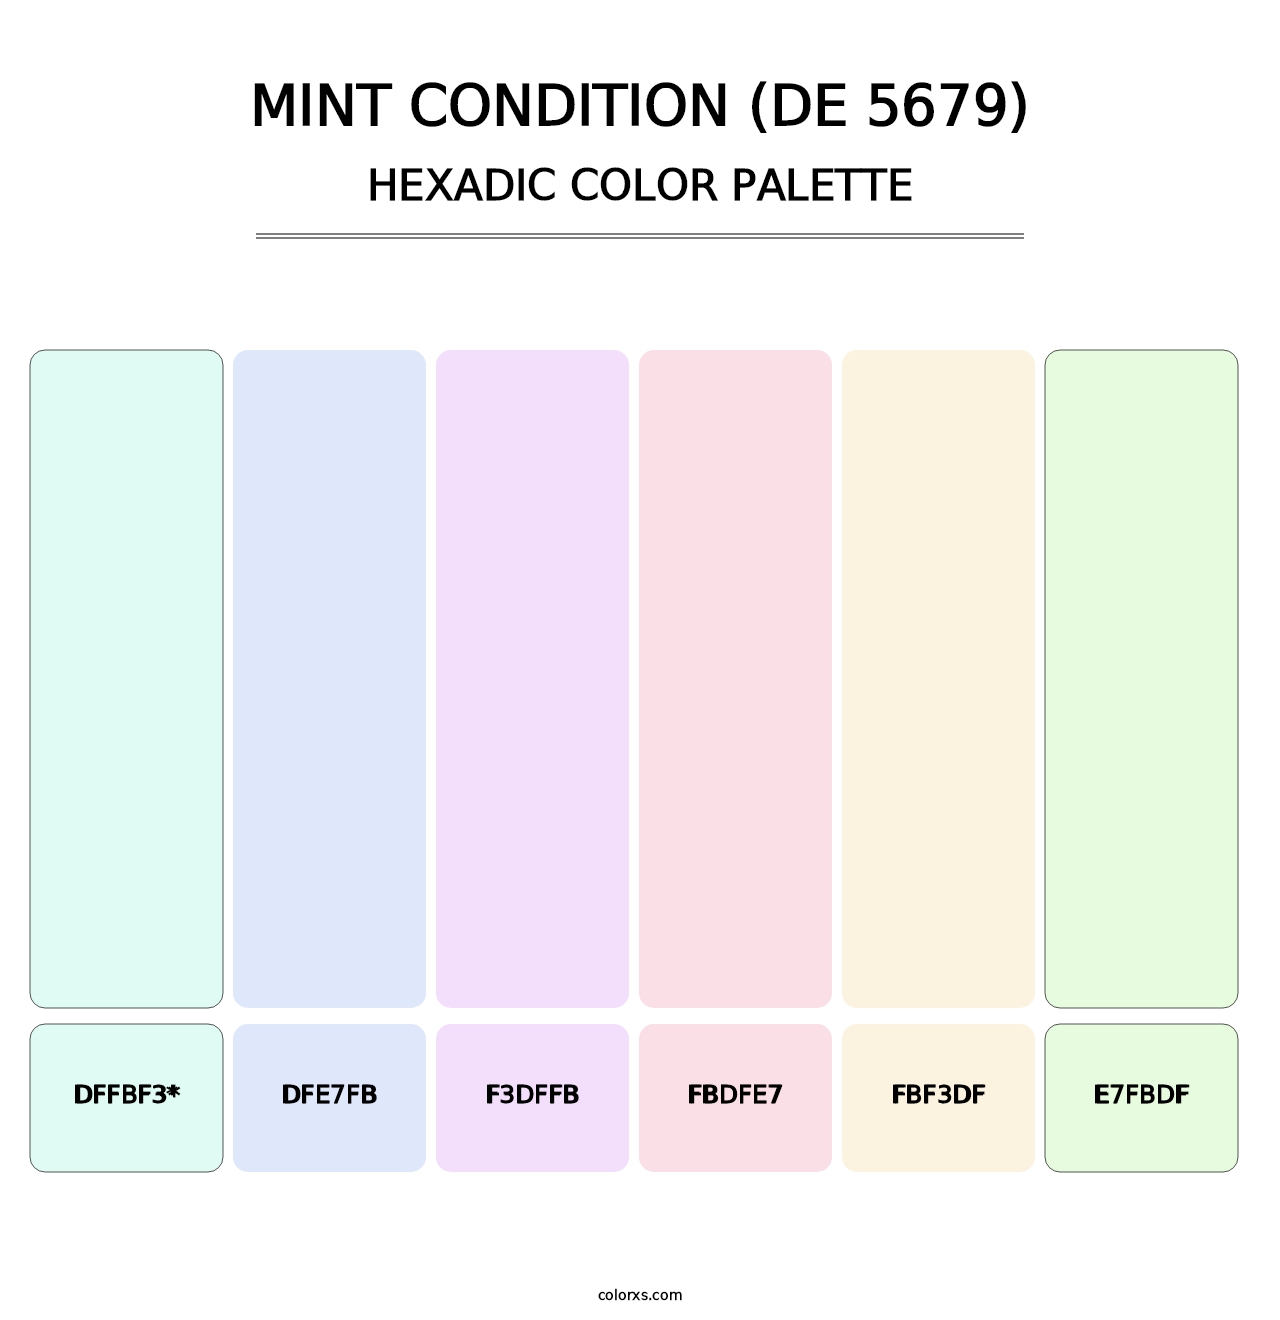 Mint Condition (DE 5679) - Hexadic Color Palette